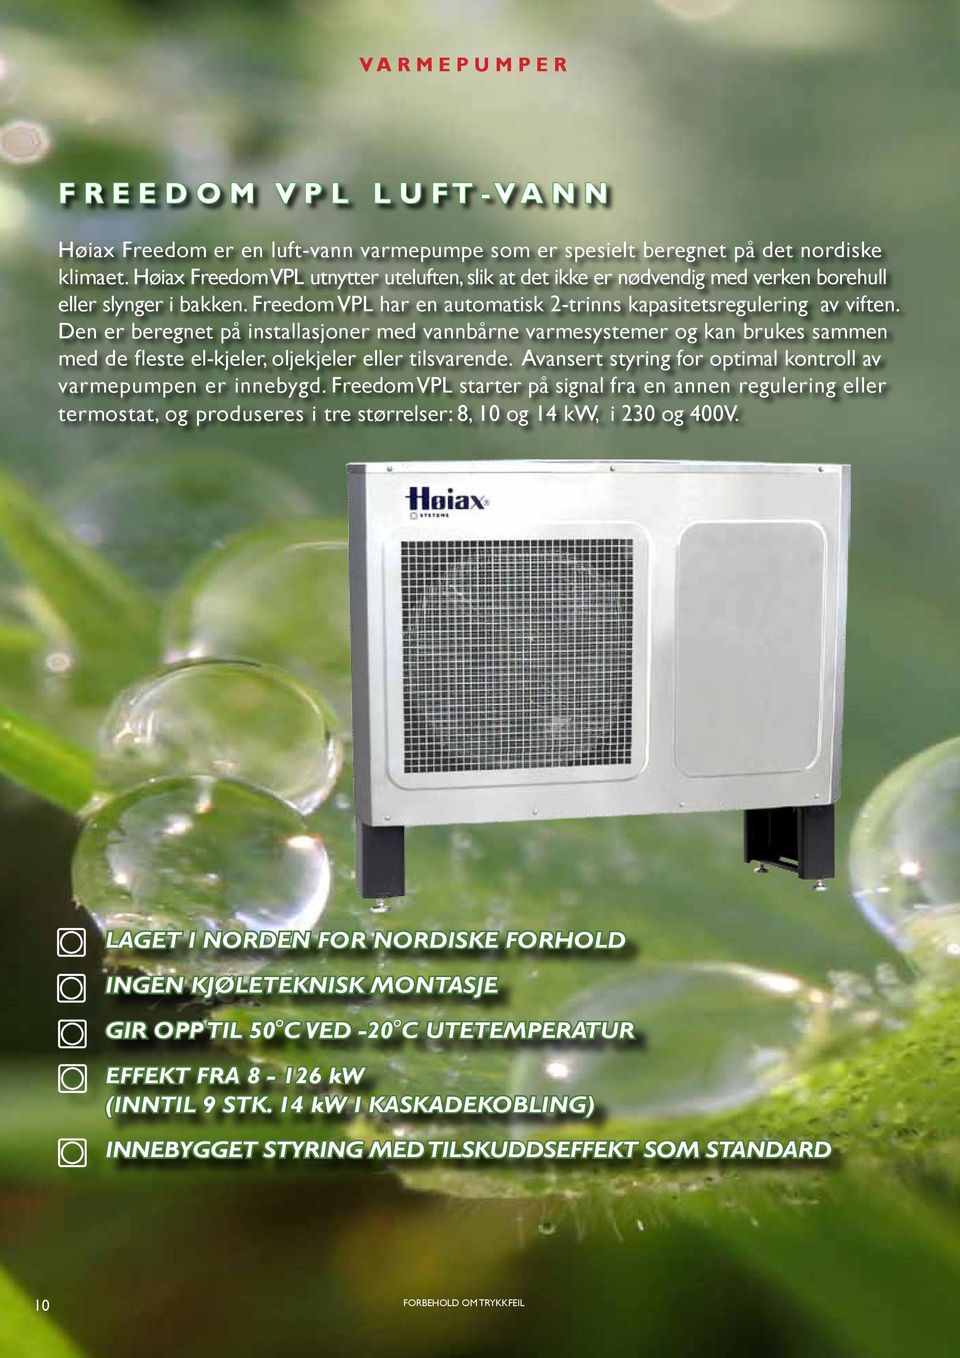 Den er beregnet på installasjoner med vannbårne varmesystemer og kan brukes sammen med de fleste el-kjeler, oljekjeler eller tilsvarende.